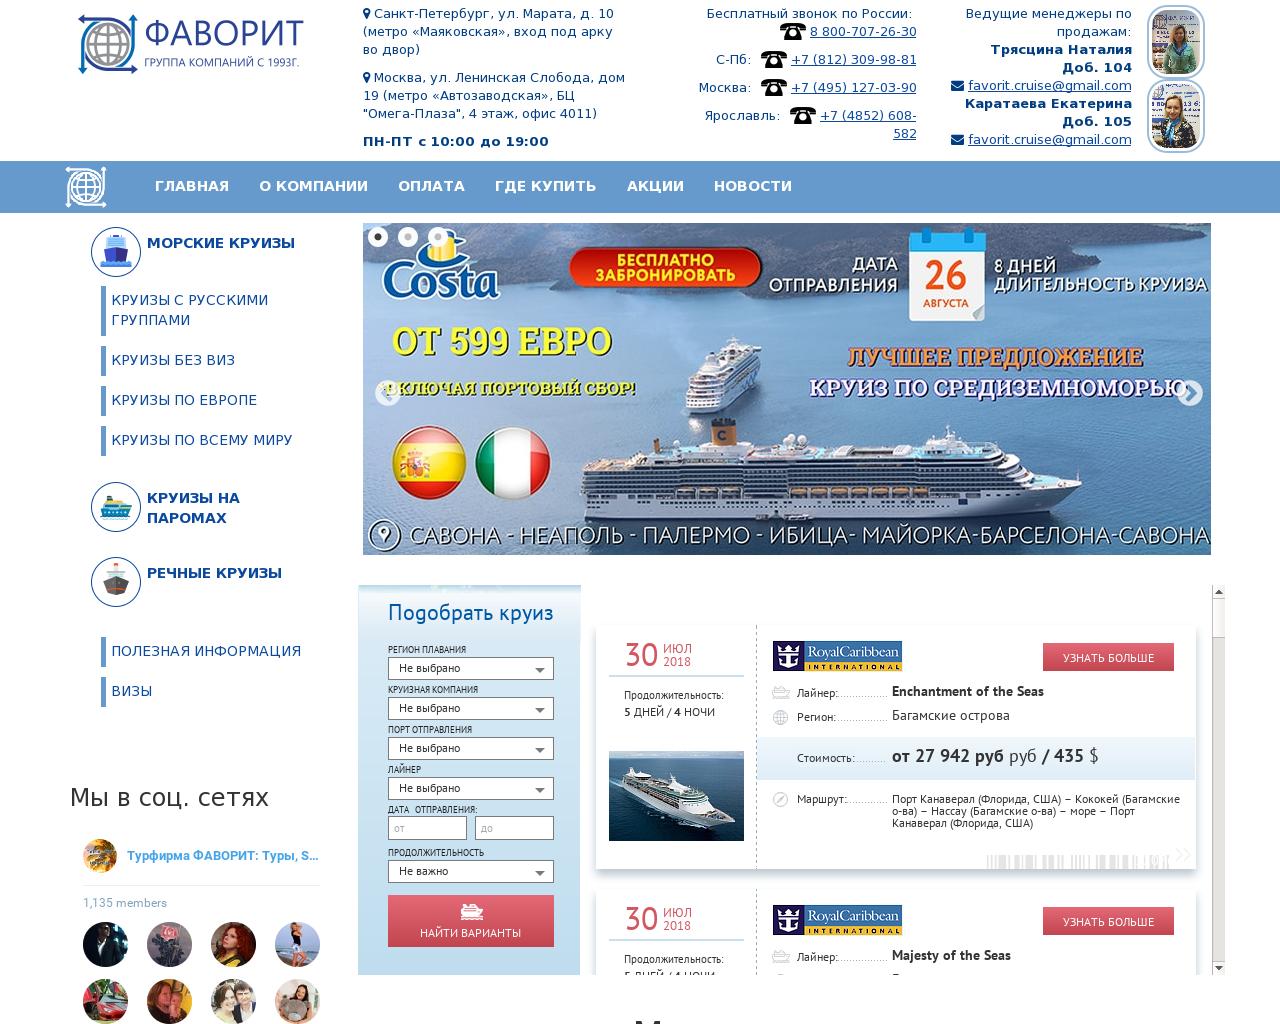 Изображение сайта favorit-cruise.ru в разрешении 1280x1024